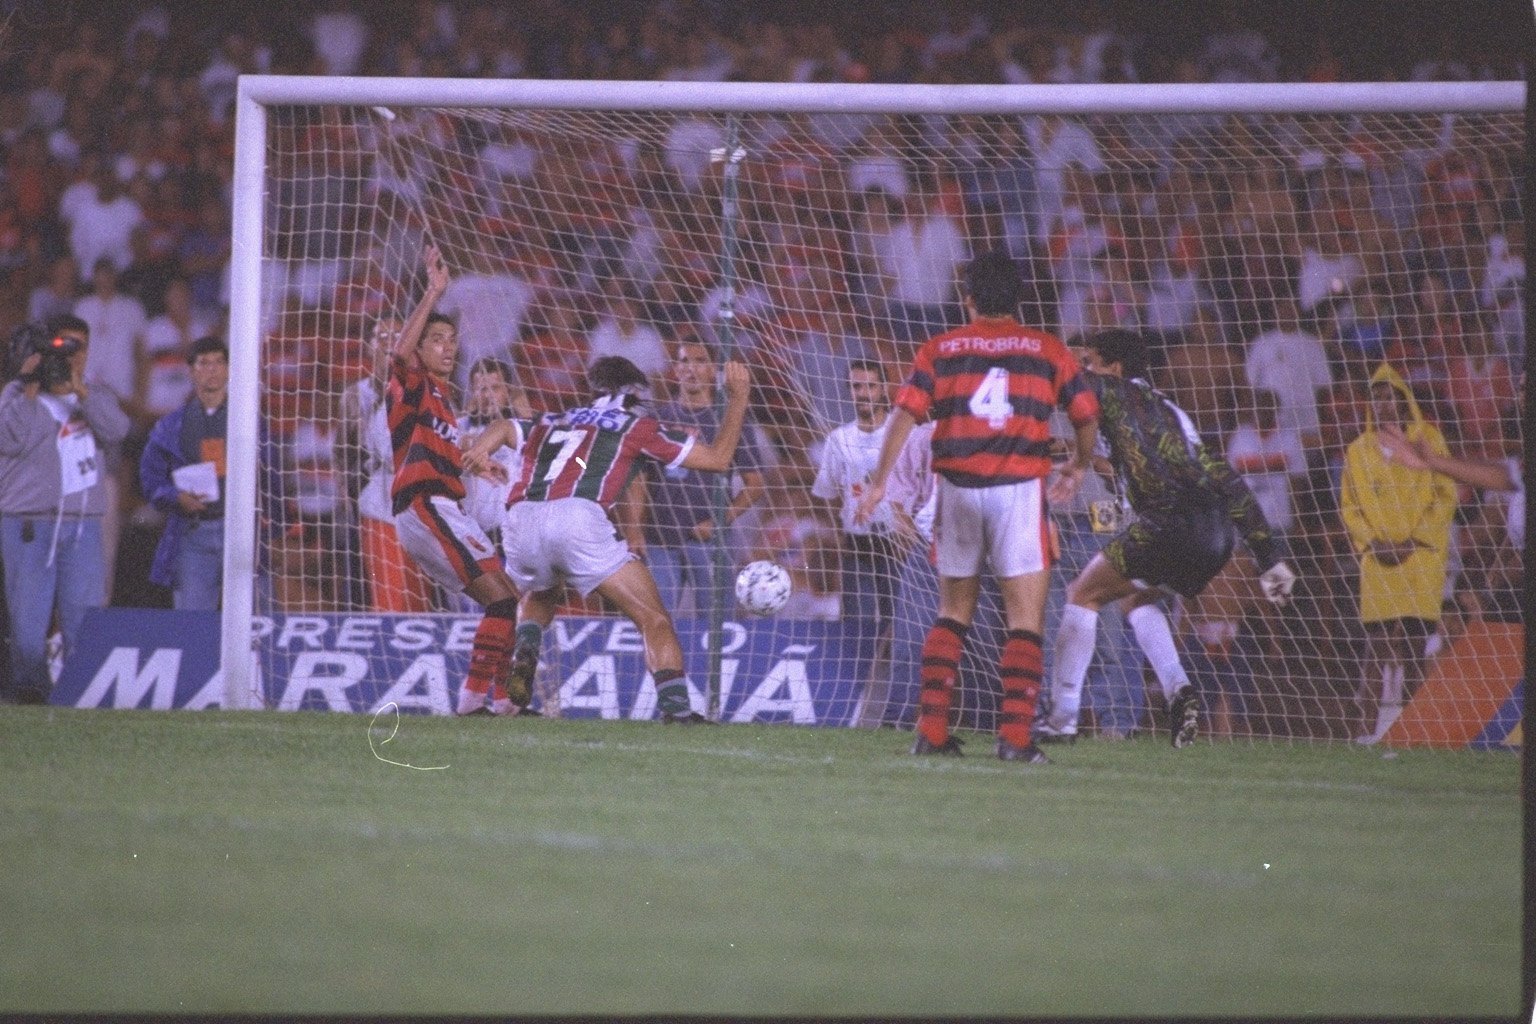 Um dos casos mais emblemáticos de "lei do ex" aconteceu na final do campeonato carioca de 1995. Renato Gaúcho, campeão com a camisa rubro-negra, marcou de barriga aos 42 minutos do segundo tempo e assegurou o título ao tricolor.